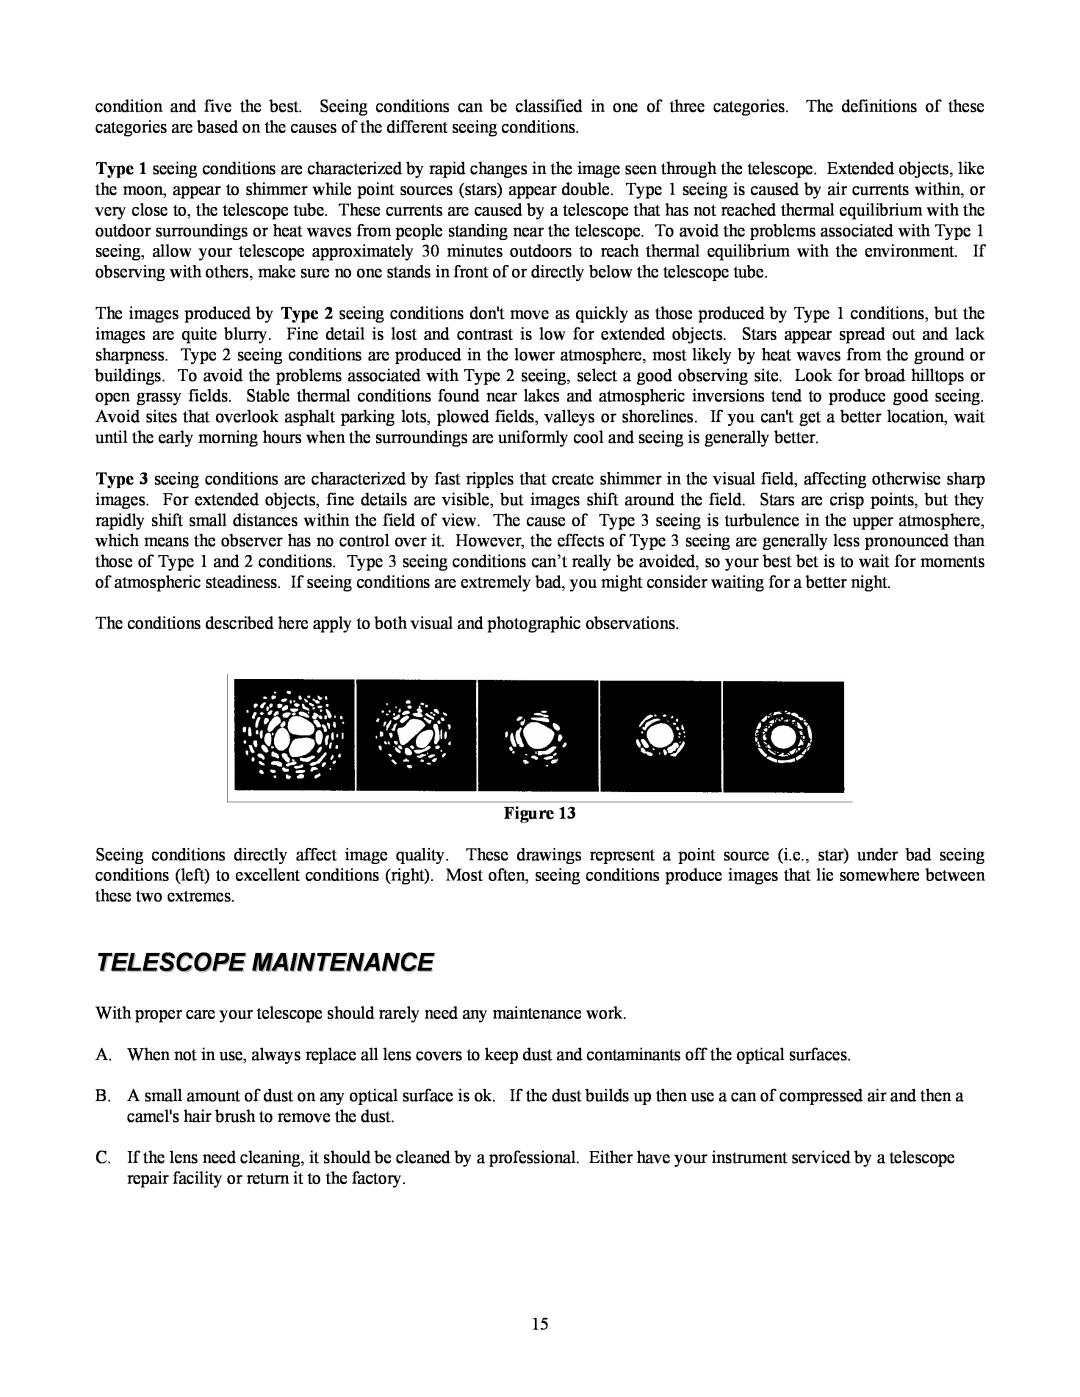 Celestron 70 manual Telescope Maintenance 